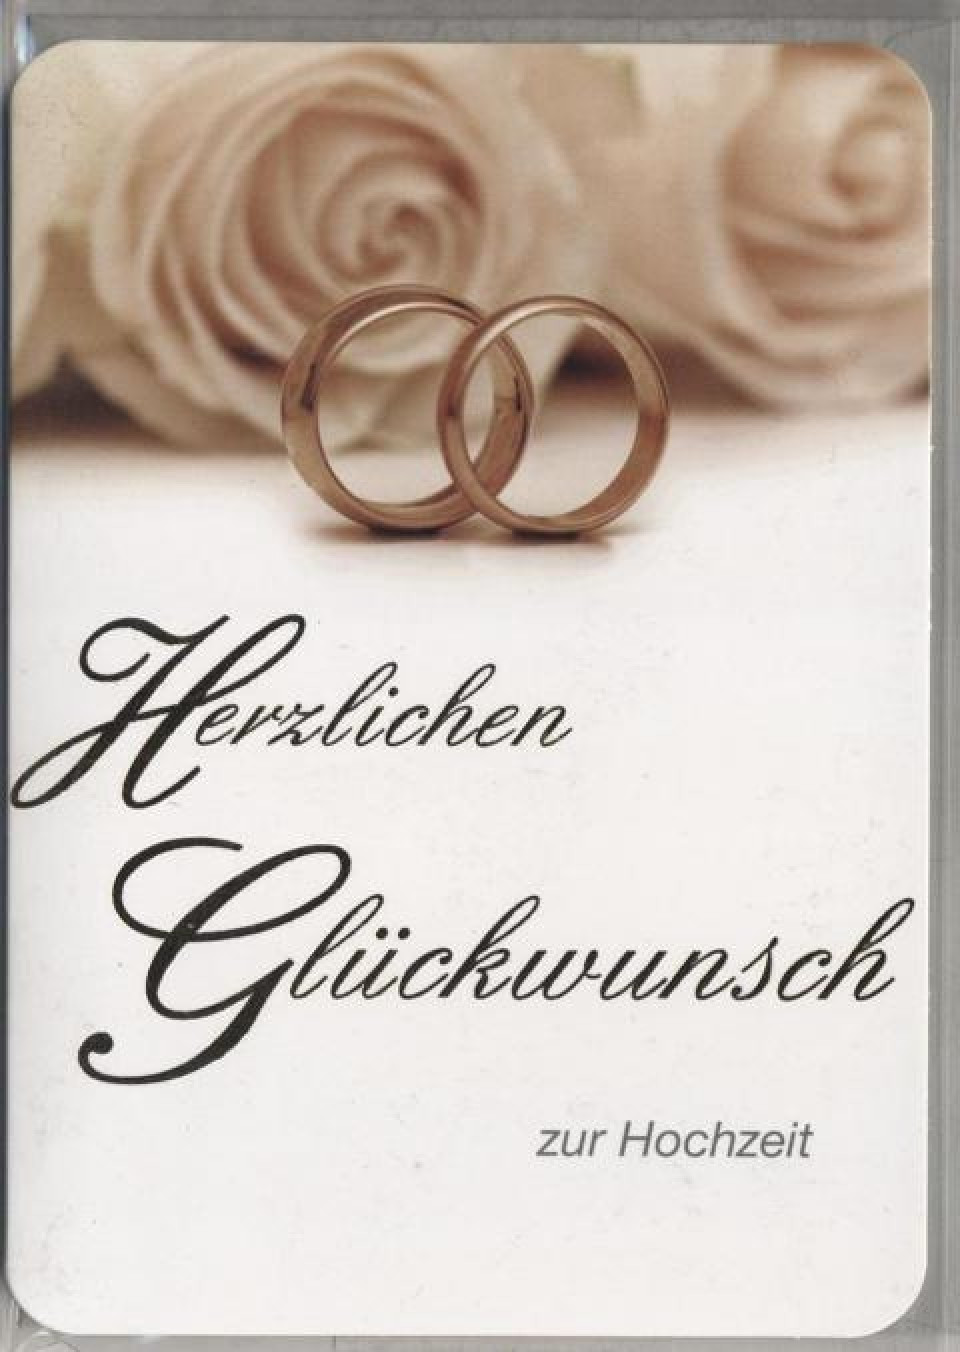 Herzlichen Glückwunsch Zur Hochzeit Sprüche Glückwunschkarte Hochzeit Herzl...